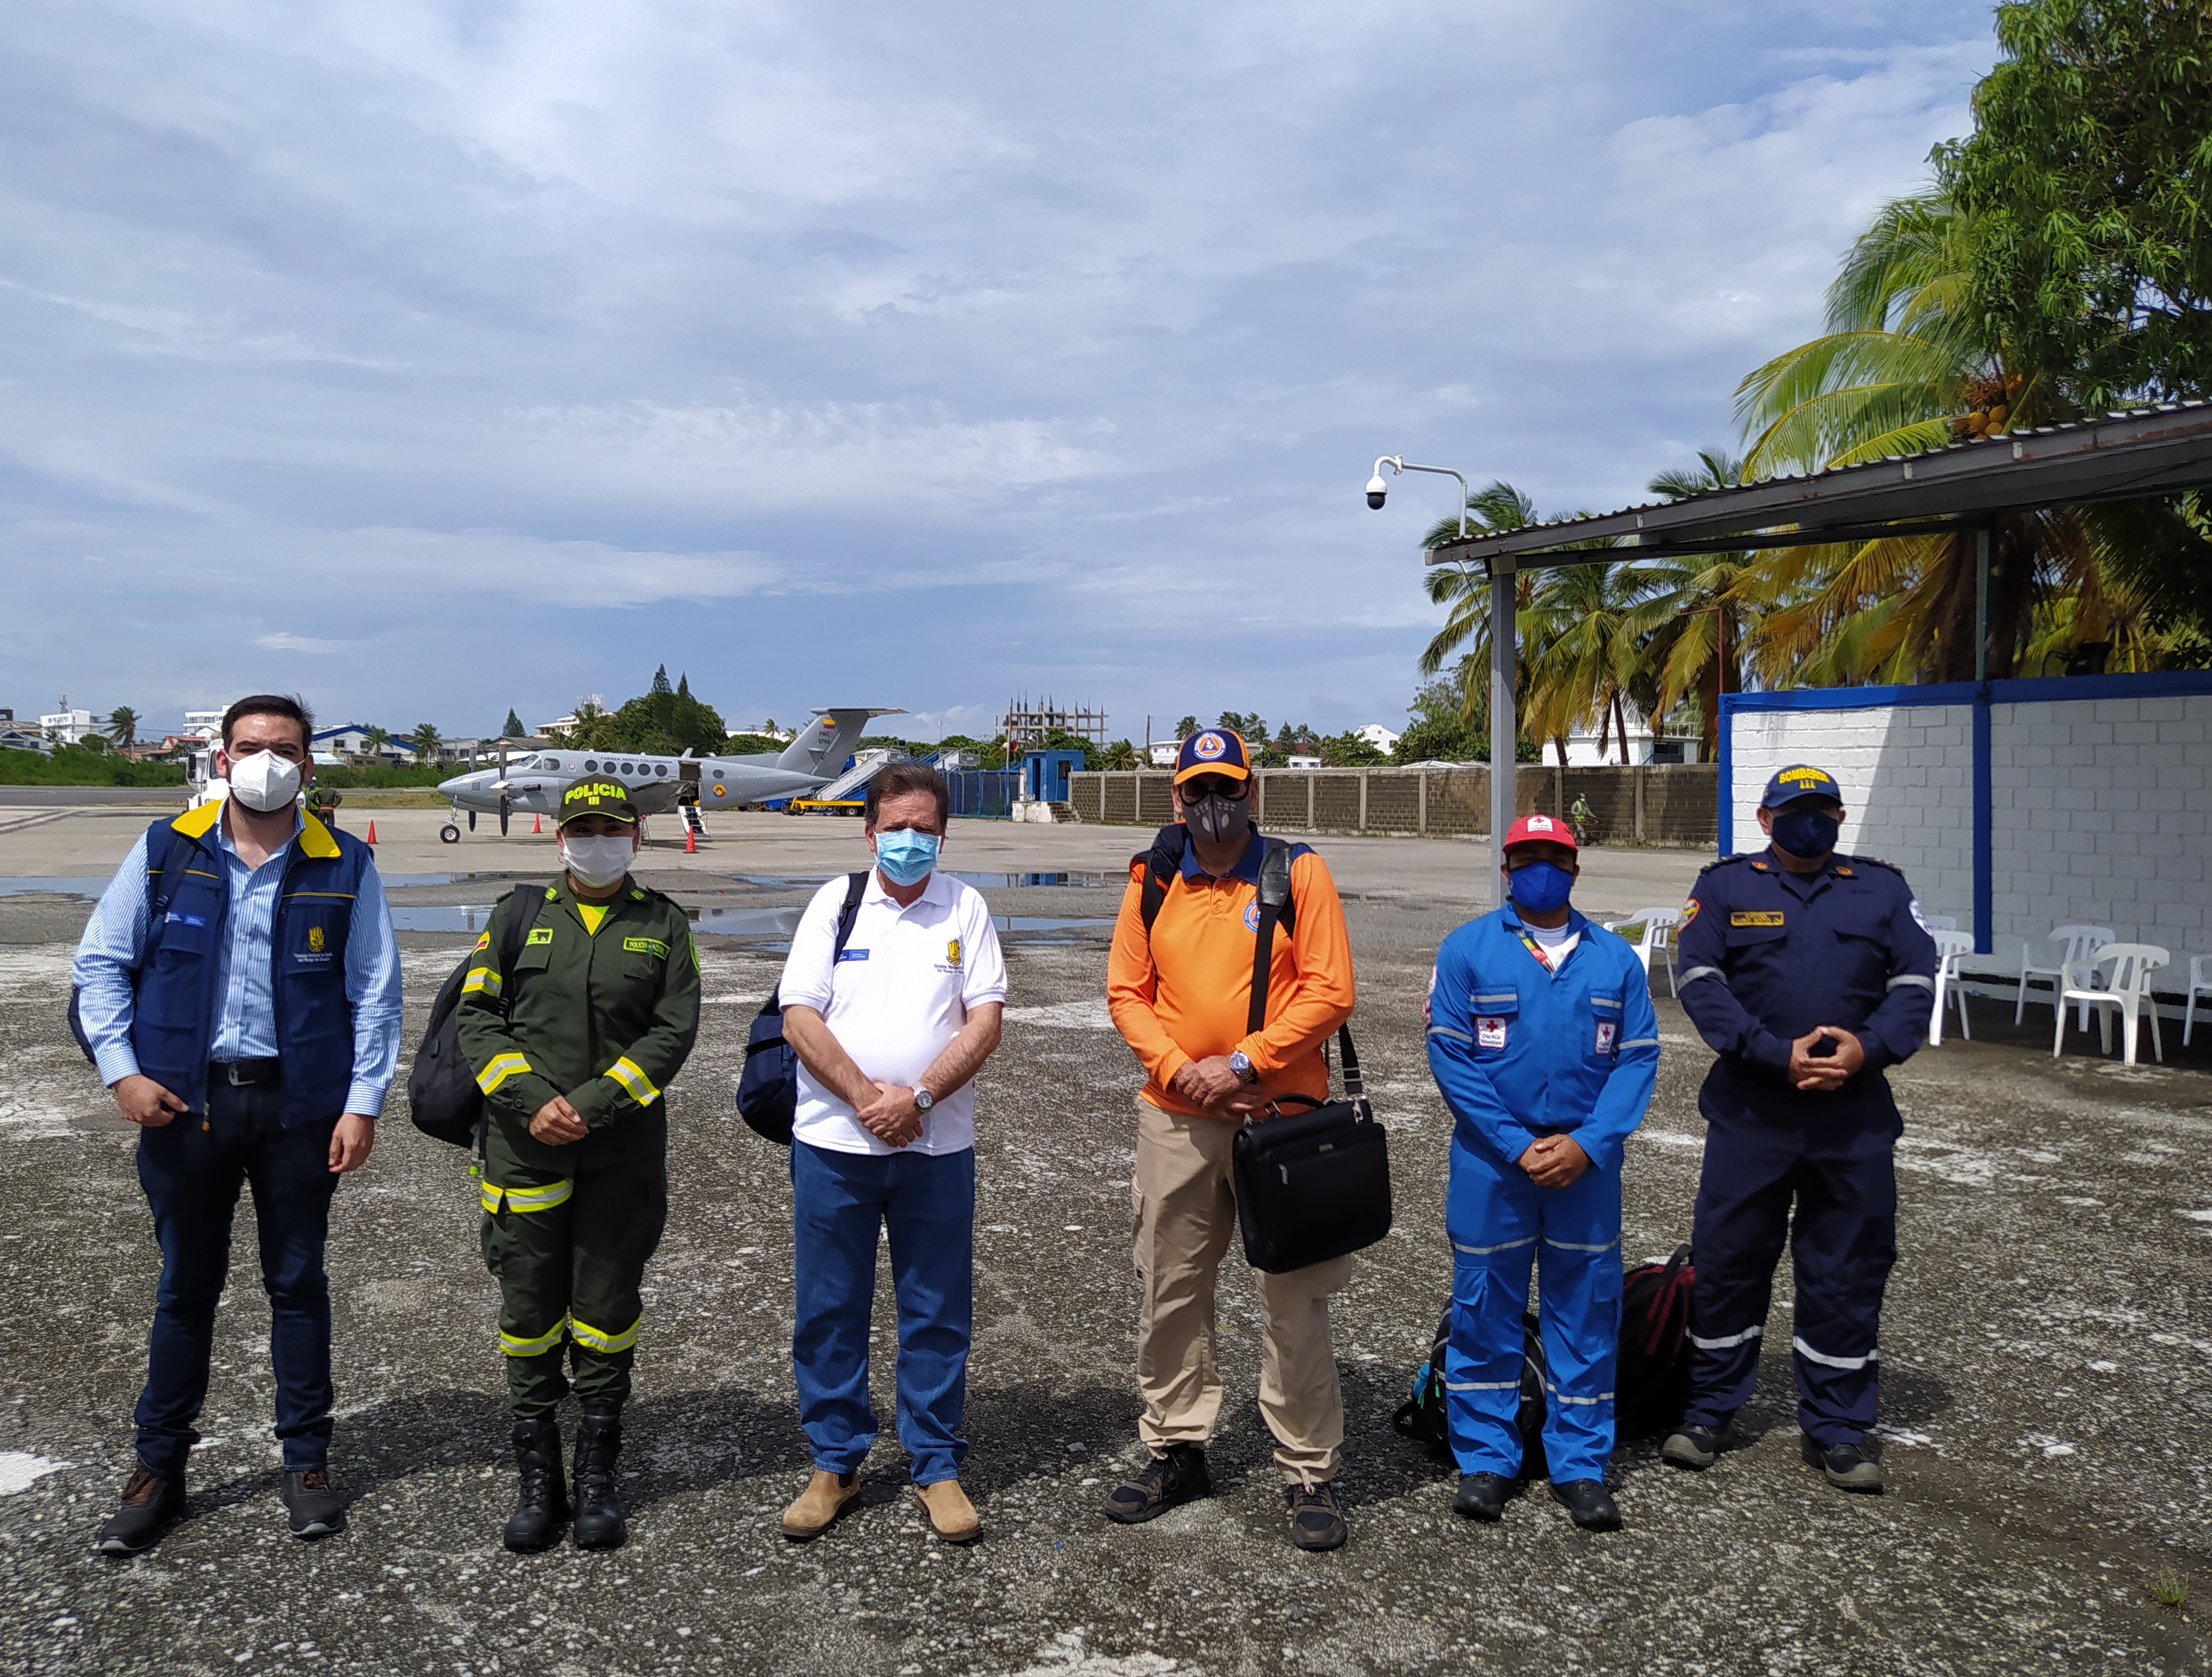 El director de la UNGRD llegó a la Isla de San Andrés abordo de un avión de su Fuerza Aérea 